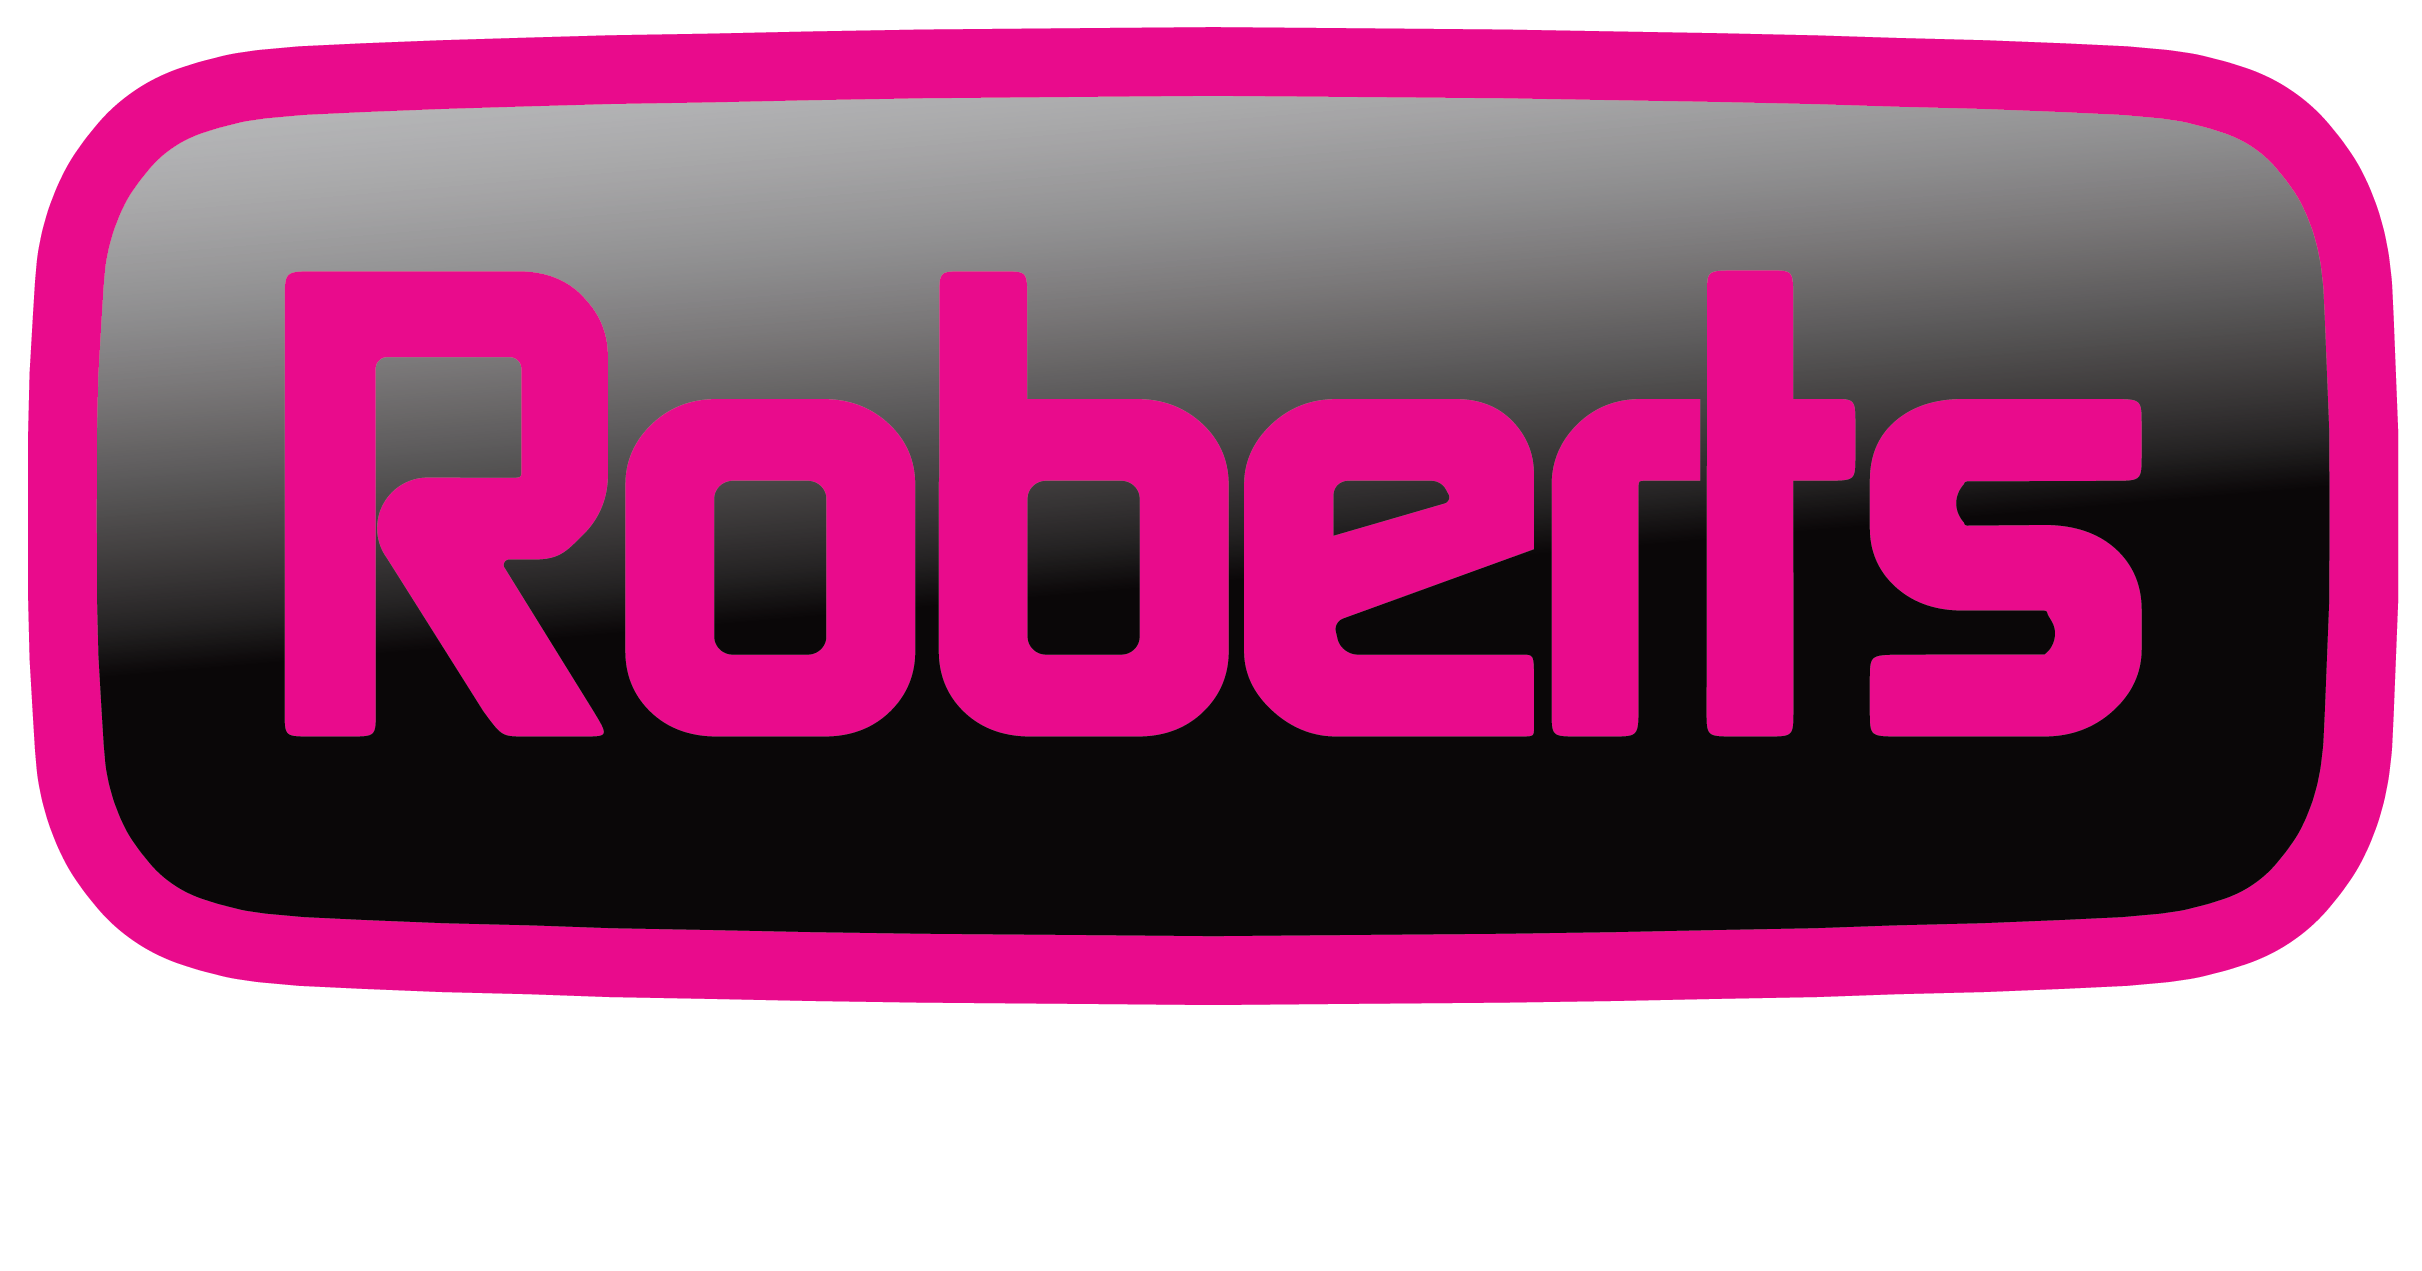 Roberts NZ